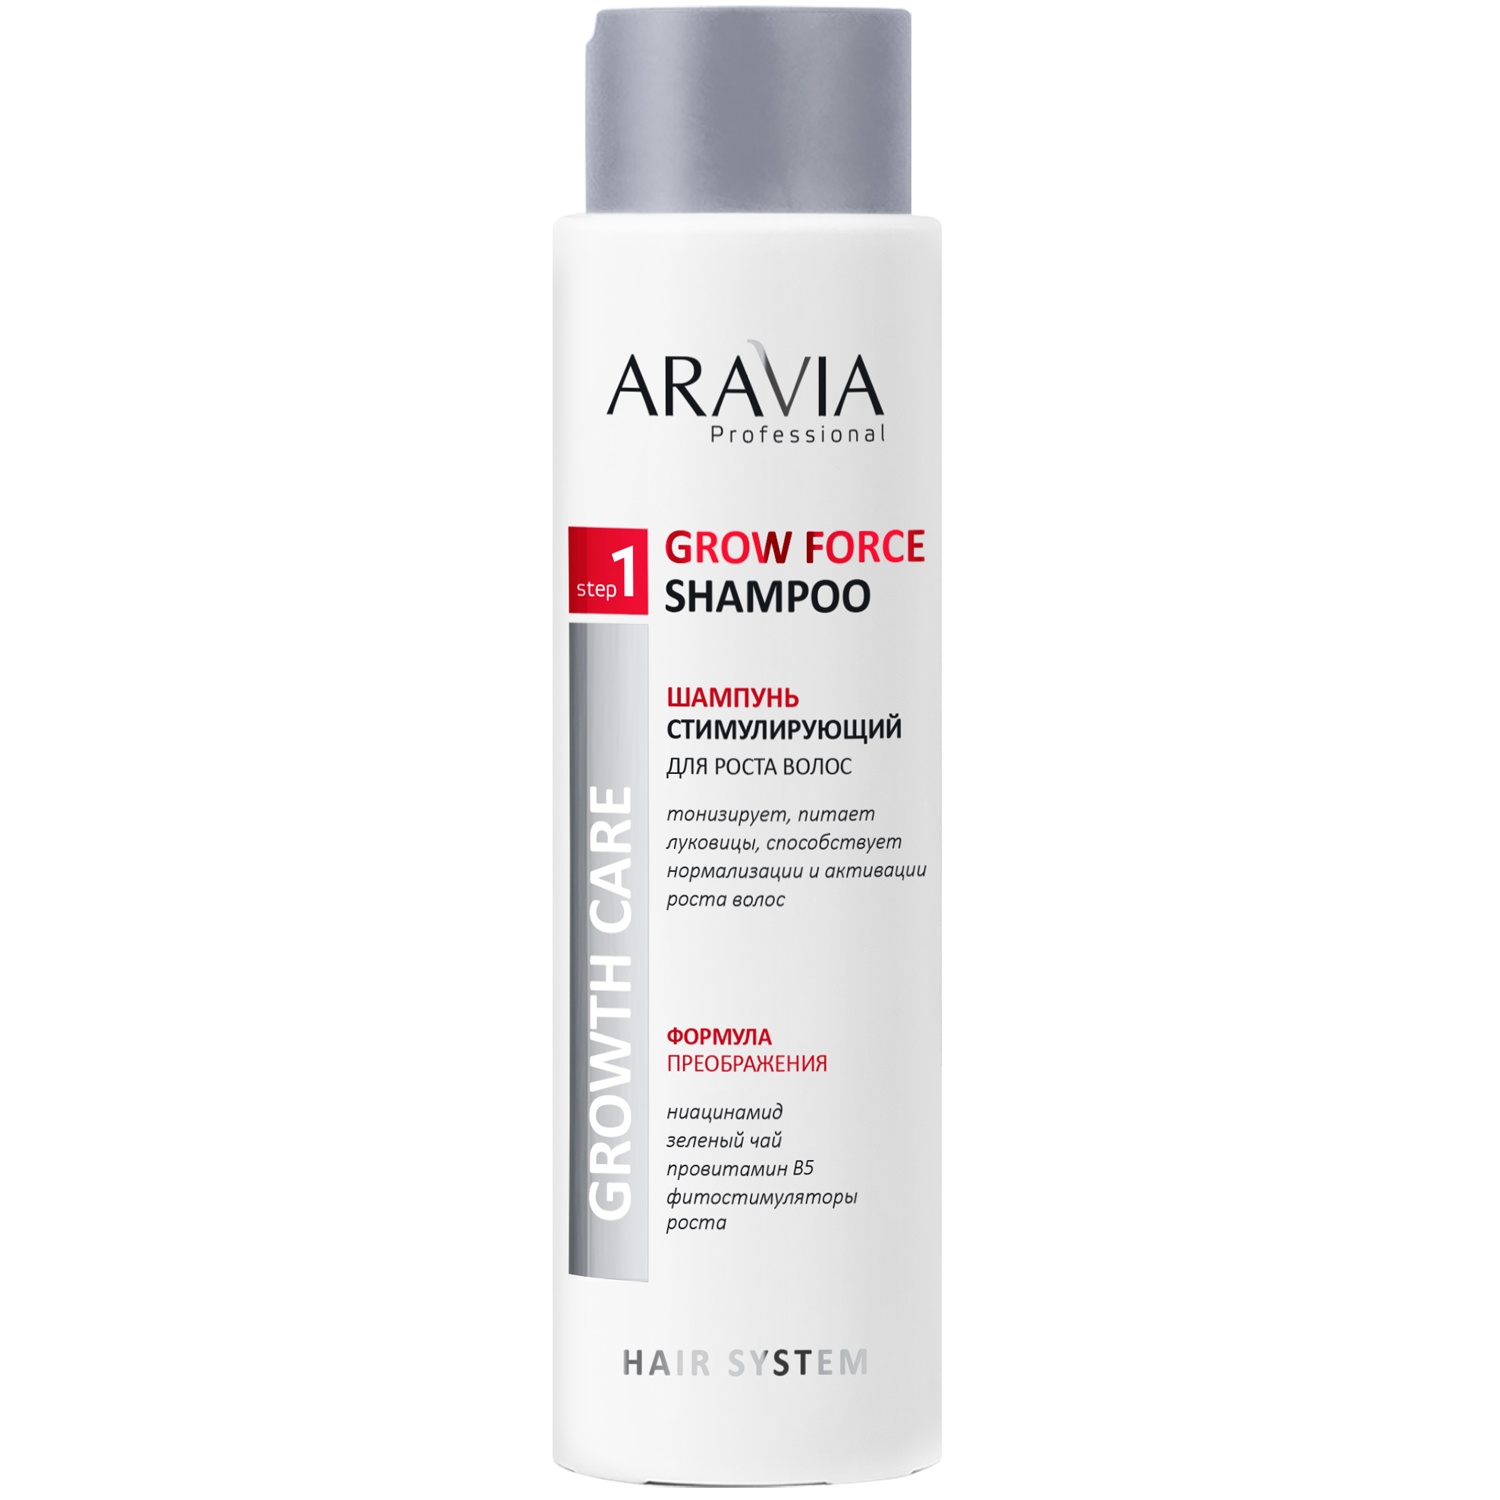 Aravia Professional Шампунь стимулирующий, для роста волос Grow Force Shampoo, 420 мл (Aravia Professional, Уход за волосами) цена и фото